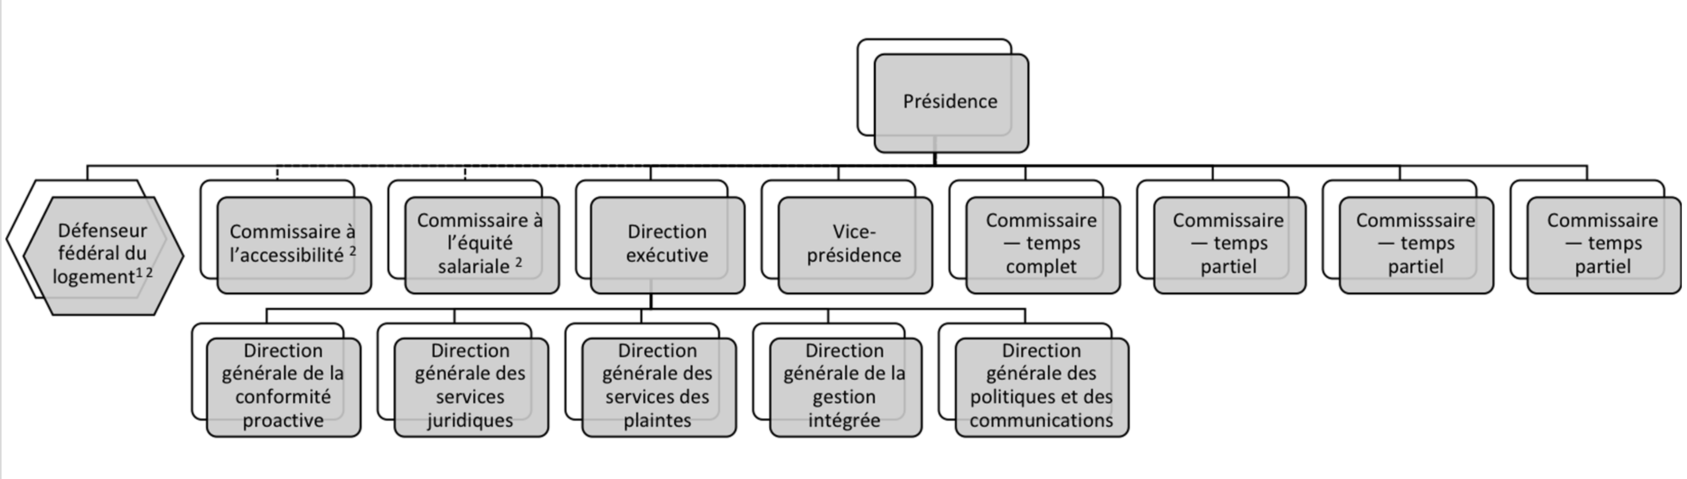 Structure organisationnelle - la version textuelle suit